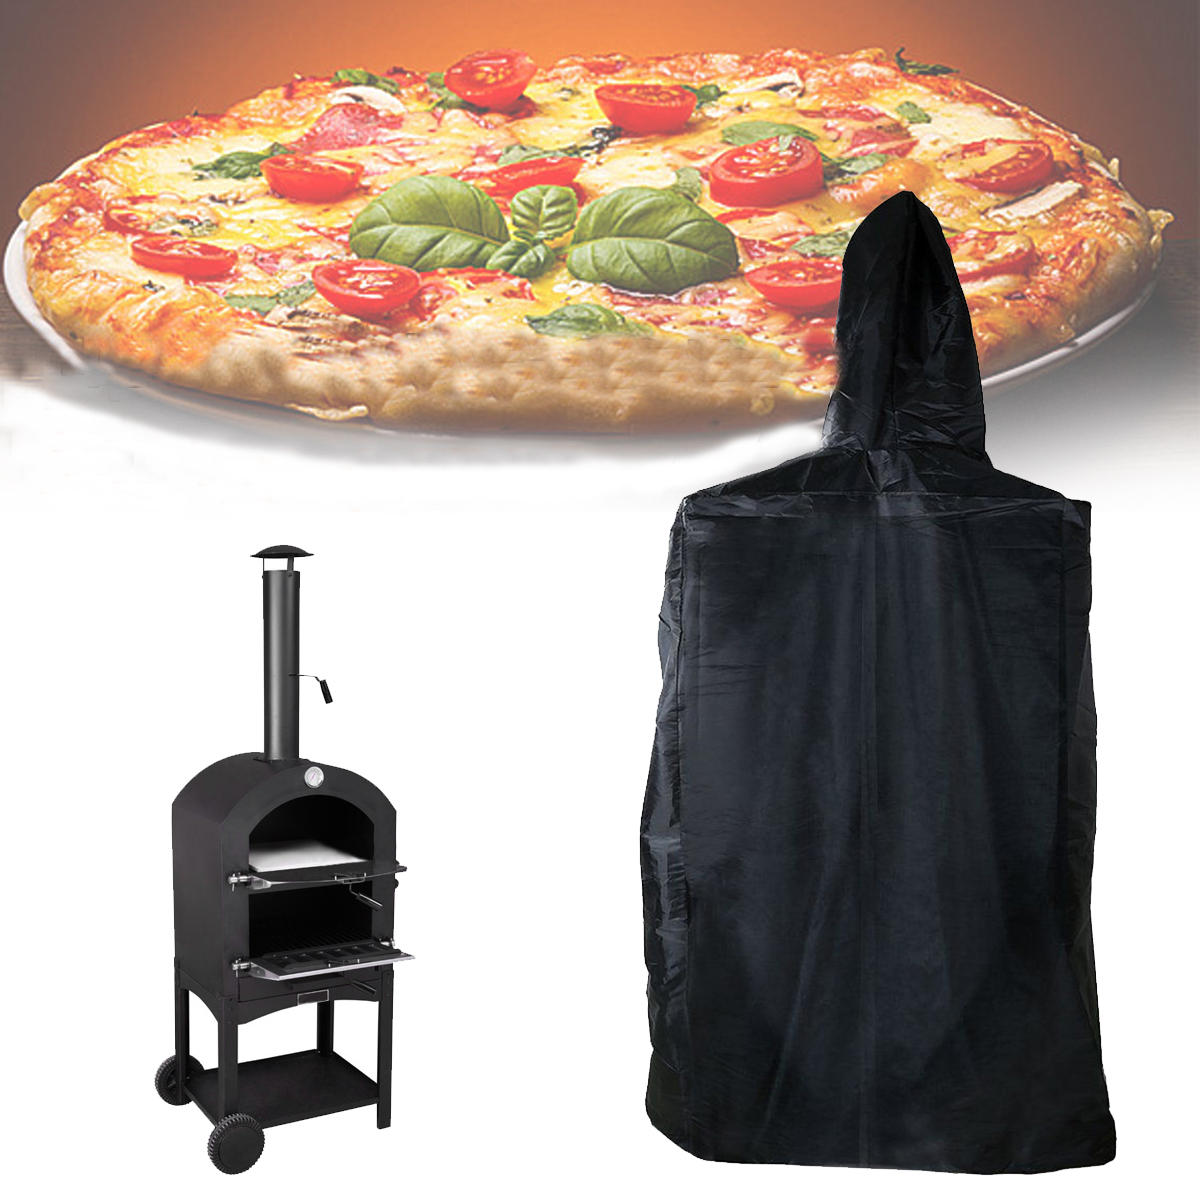 Capa para forno de pizza externo de 160x37x50cm, à prova d'água, poeira e raios UV.